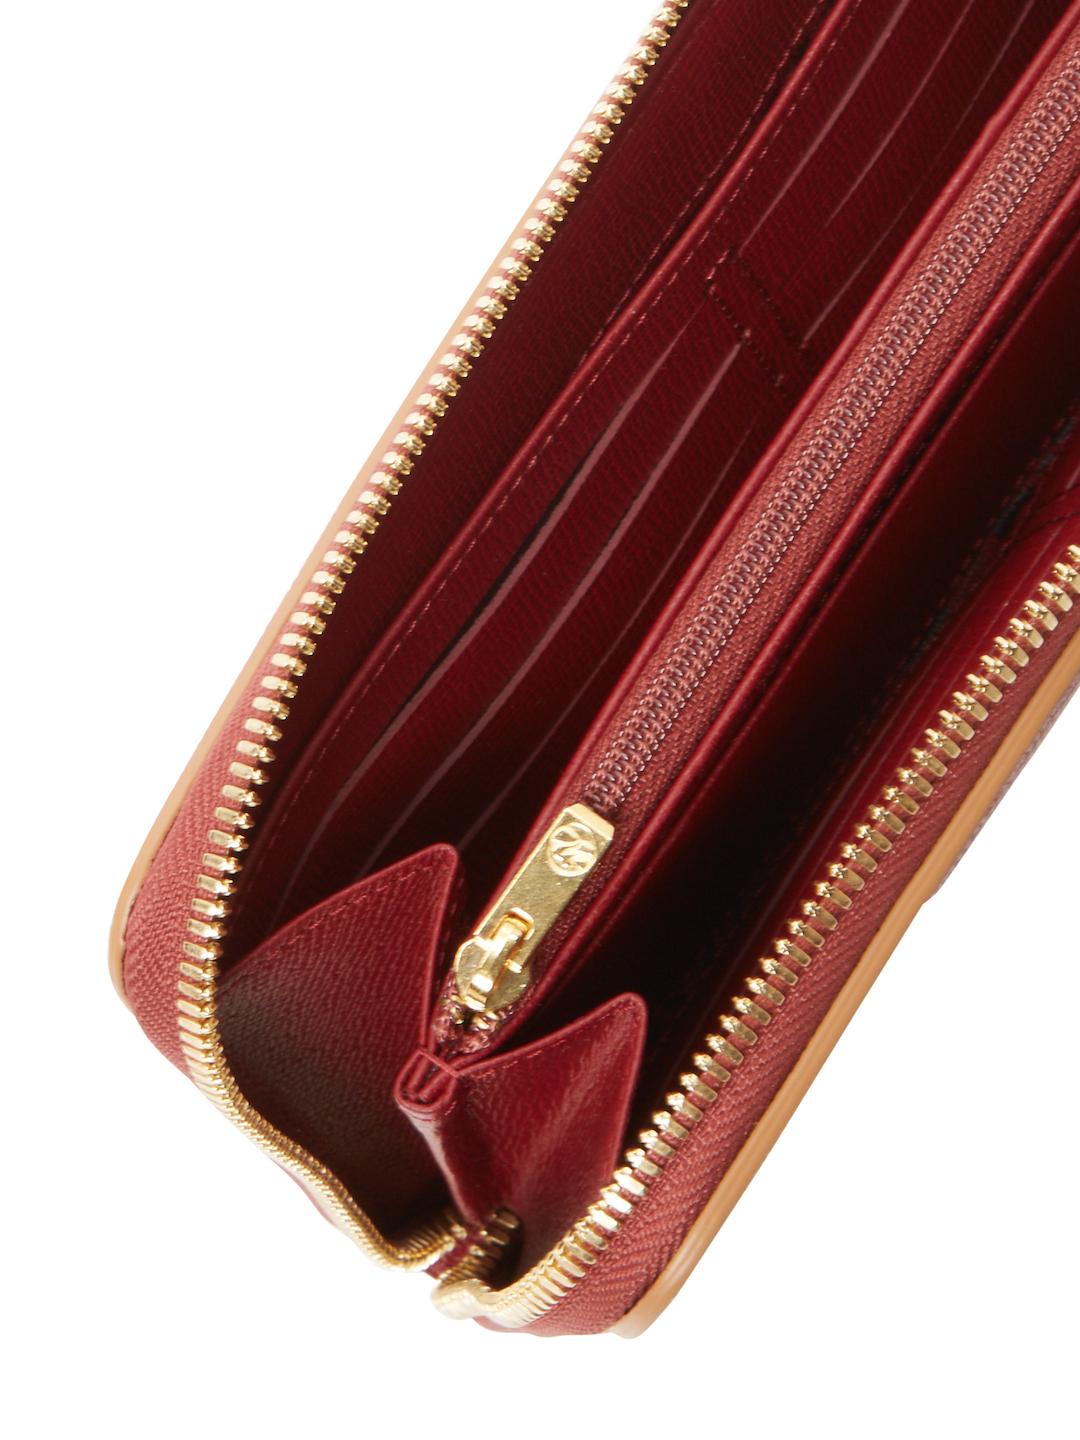 longchamp zip wallet